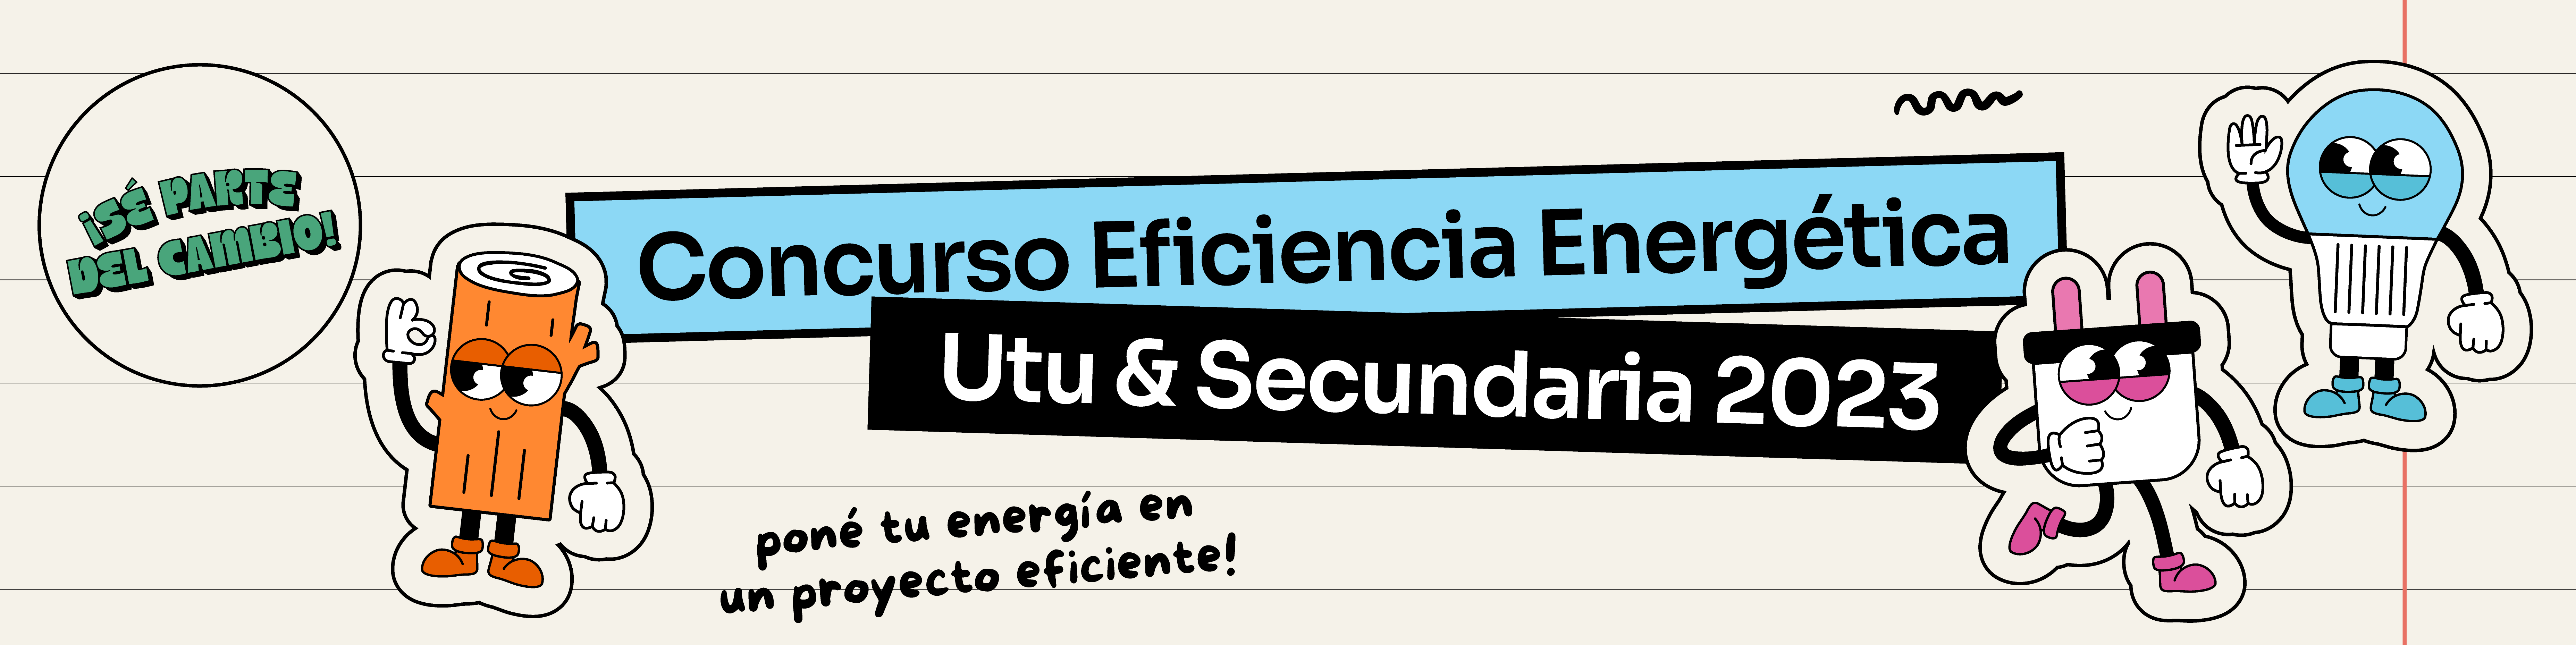 Concurso de Eficiencia Energética para UTU y Secundaria 2023